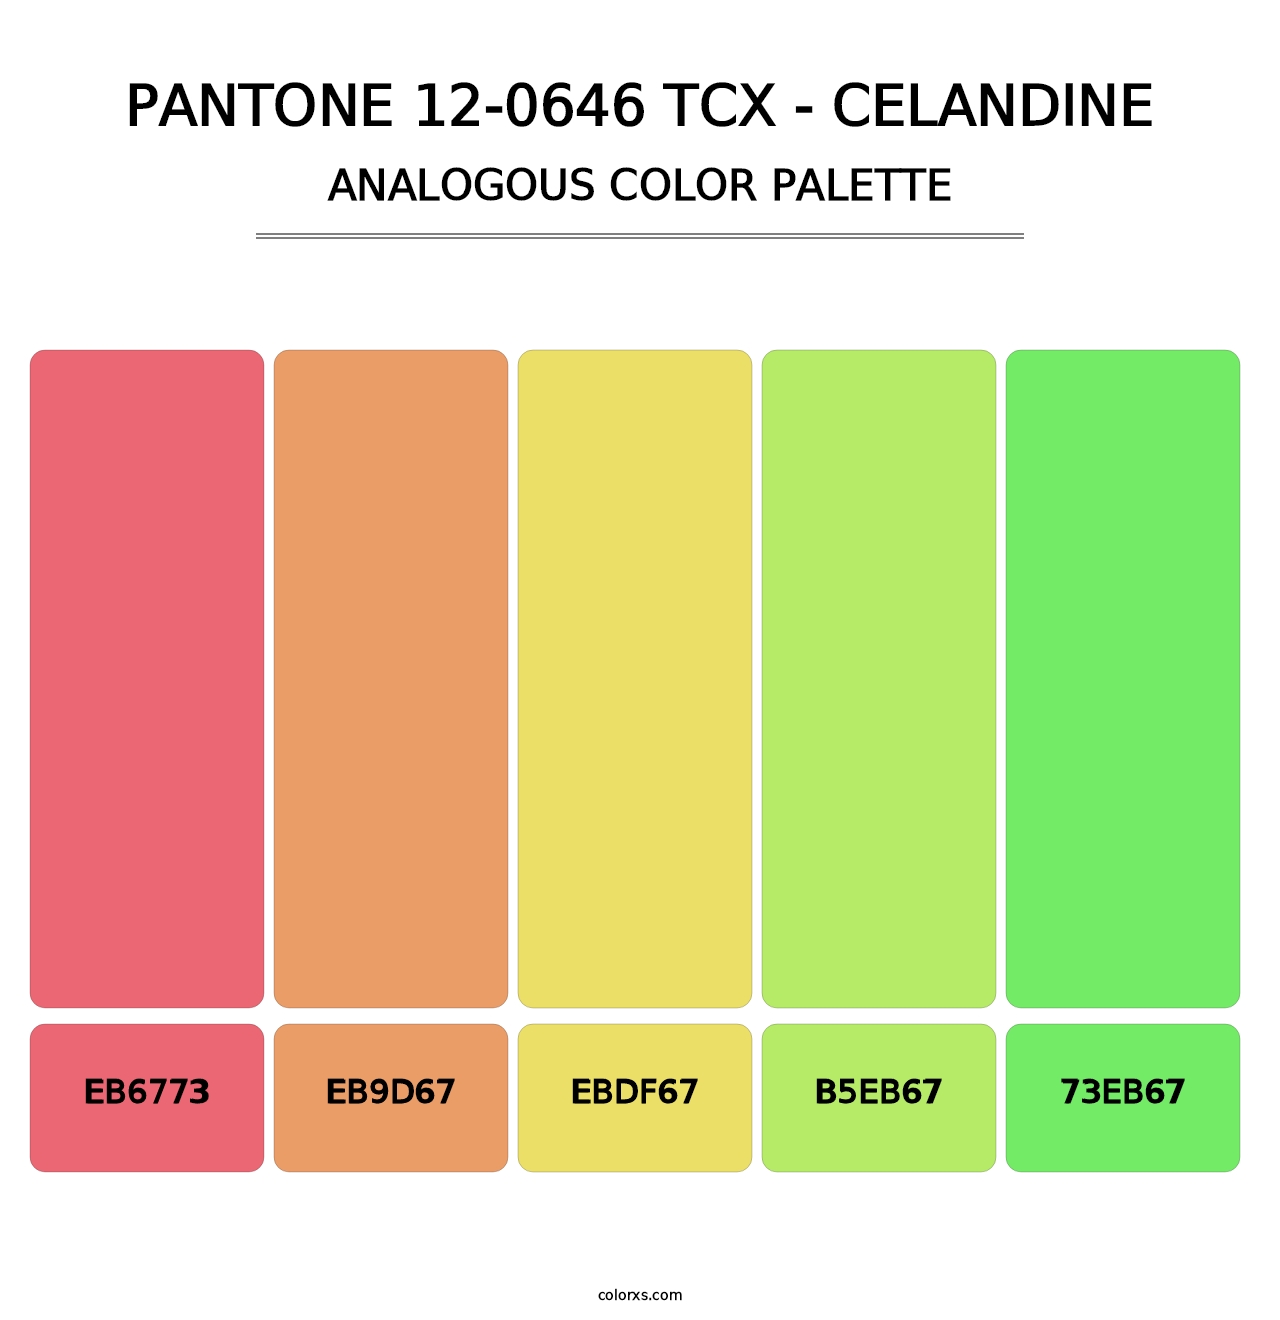 PANTONE 12-0646 TCX - Celandine - Analogous Color Palette